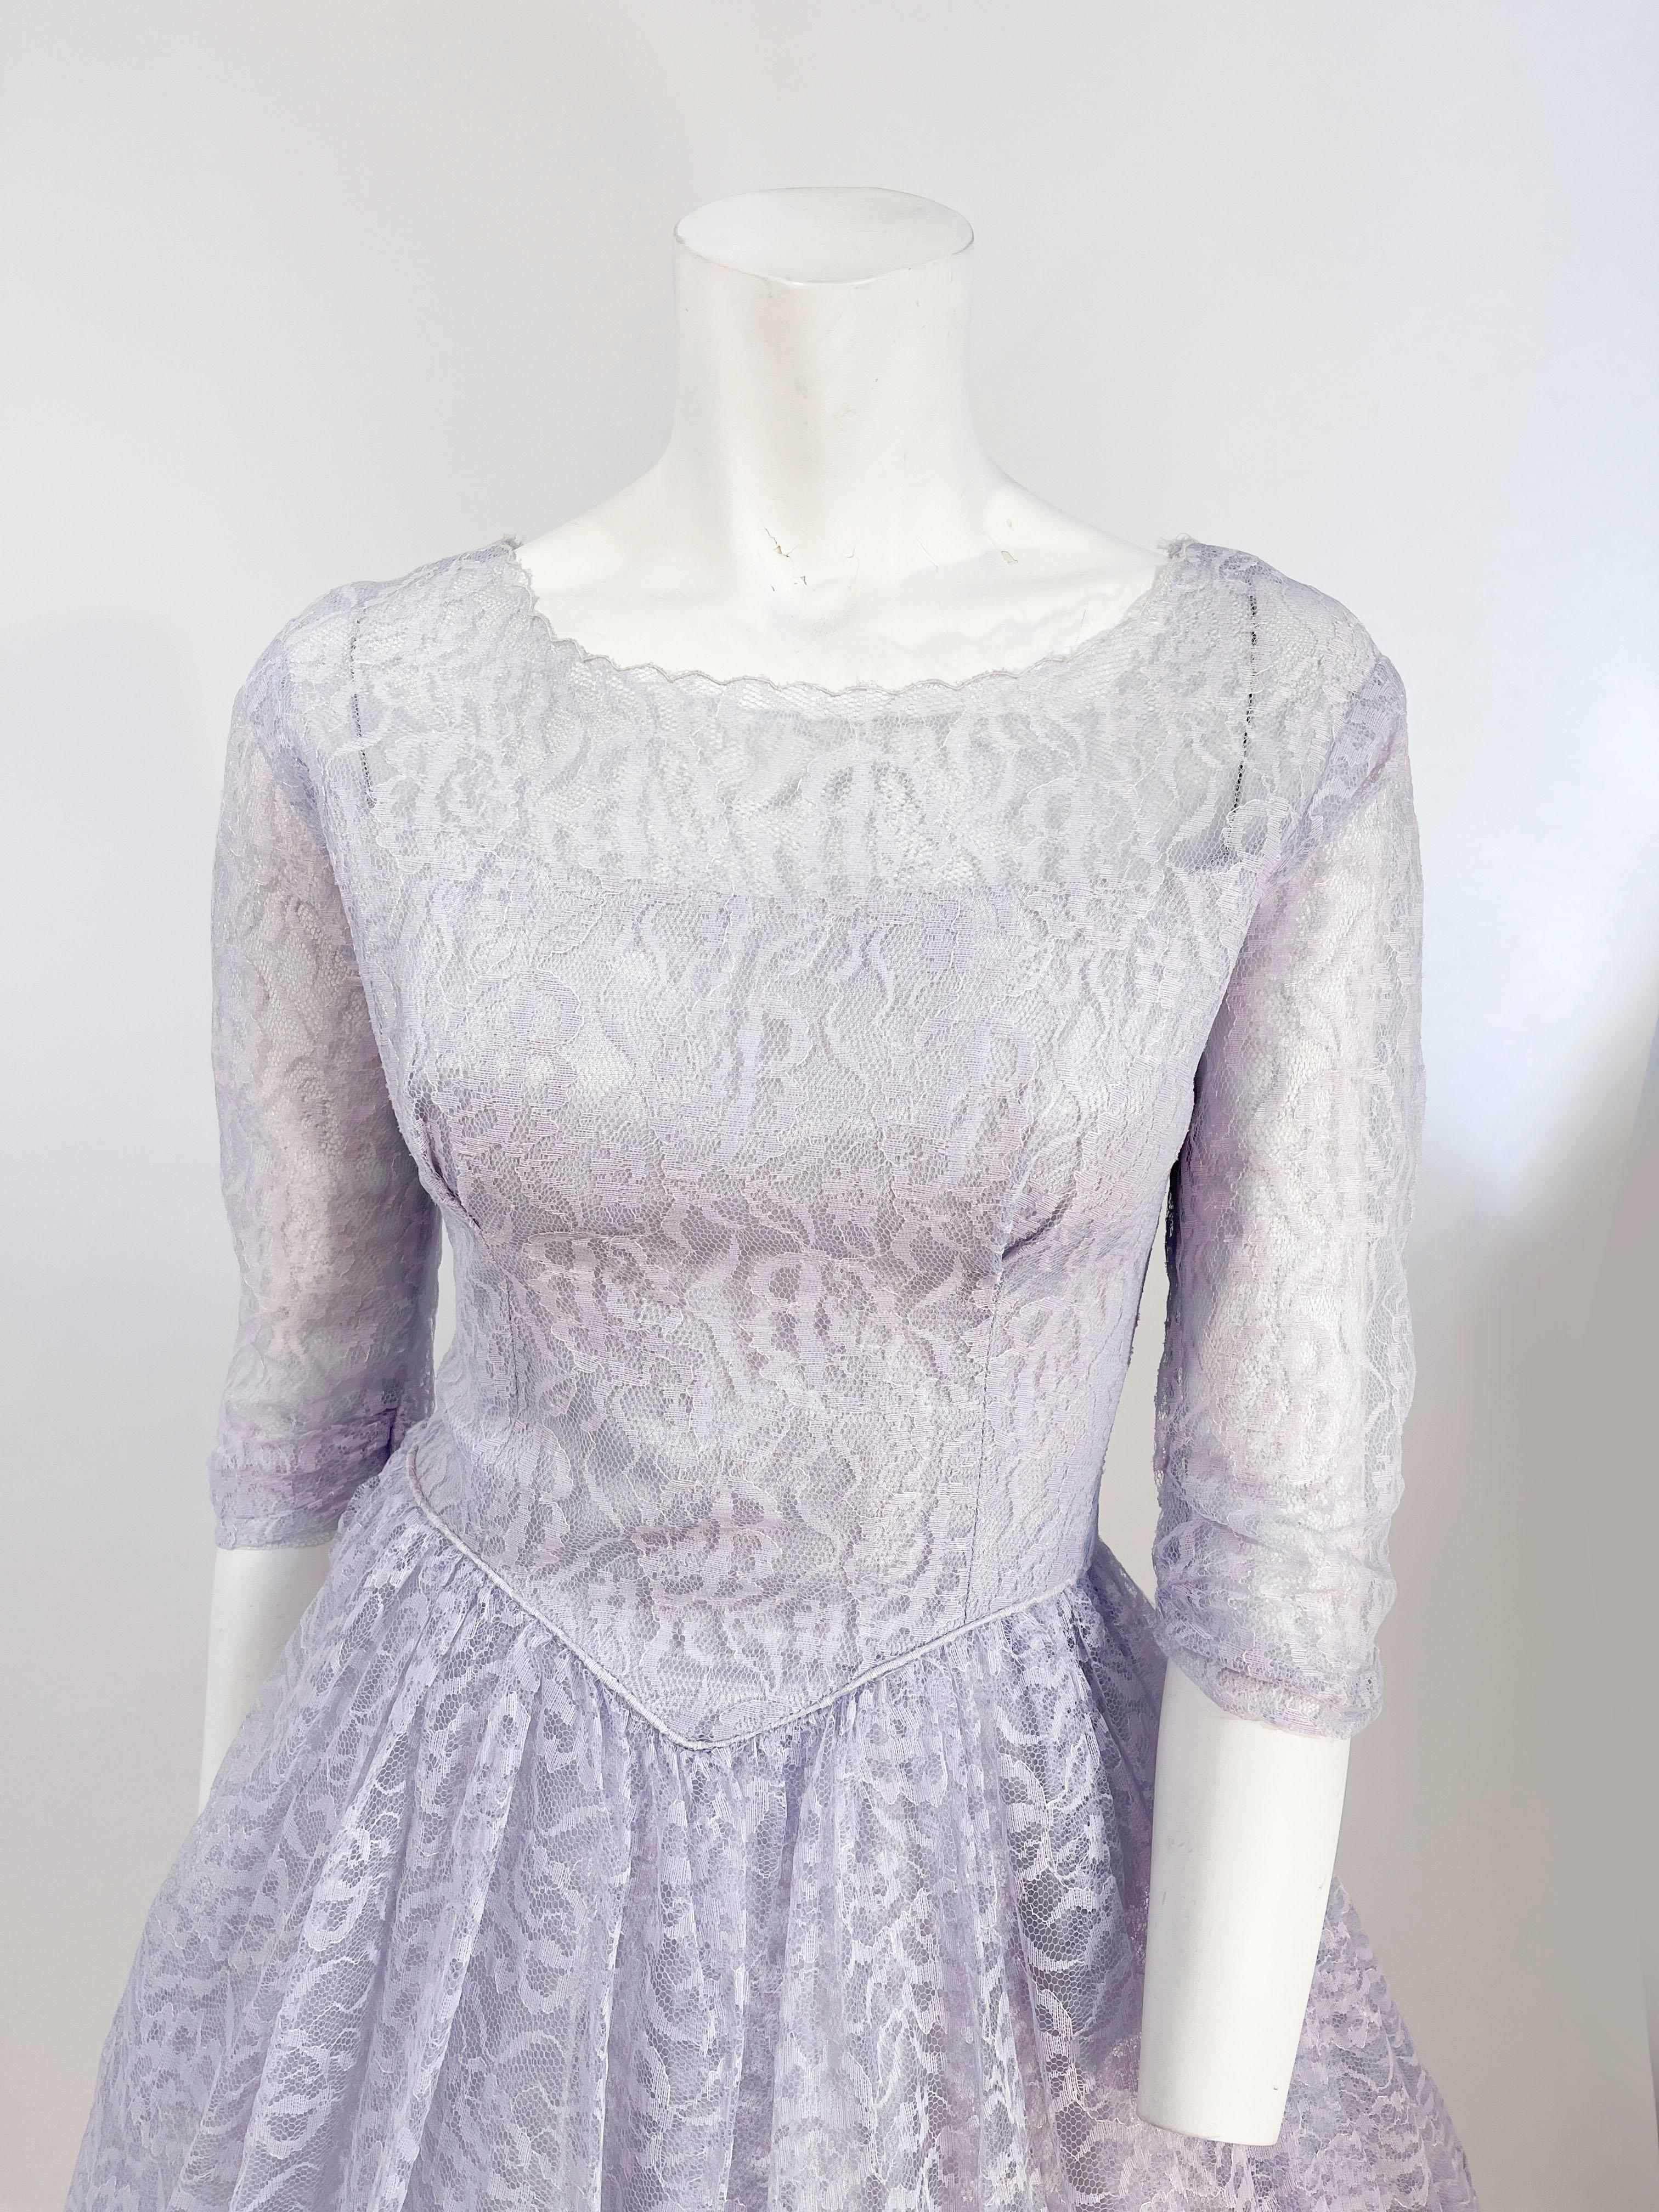 1950er Jahre Zinn/Lavendel geblümte Spitze Partykleid. Das taillierte Mieder hat einen transparenten Bootsausschnitt, der zu den gerafften Ärmeln in Dreiviertellänge passt, und eine geraffte Taille, die in einen t-förmigen Rock aus Spitze und Tüll